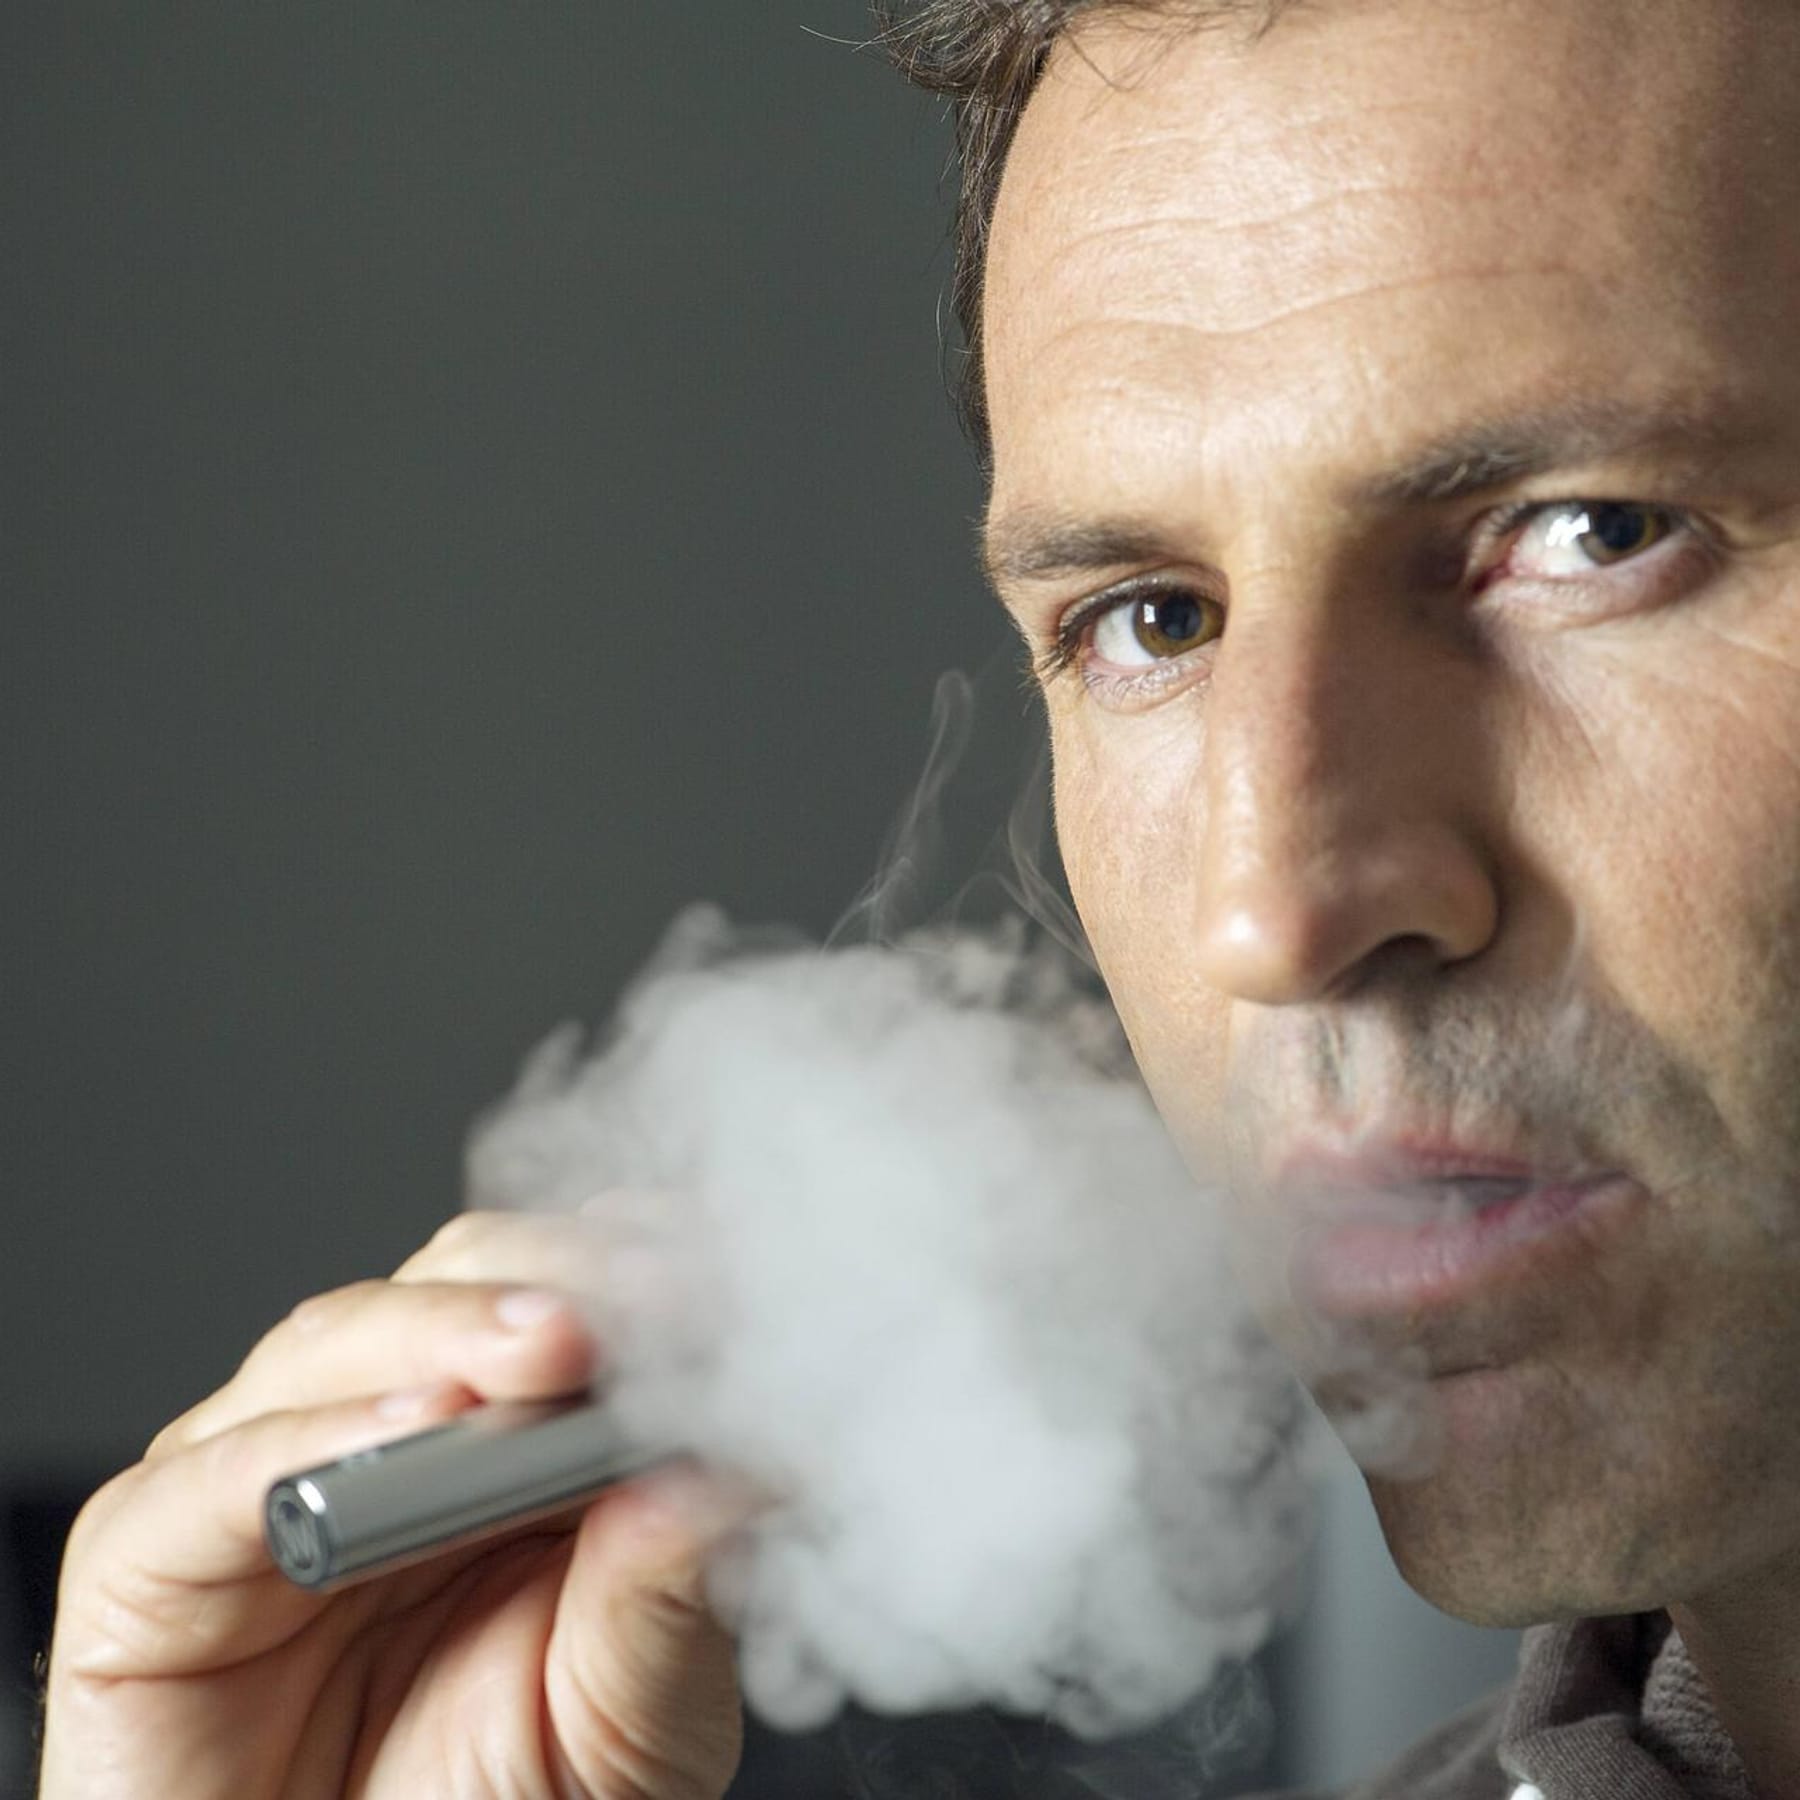 Nikotinpflaster als Alternative zum Rauchen?